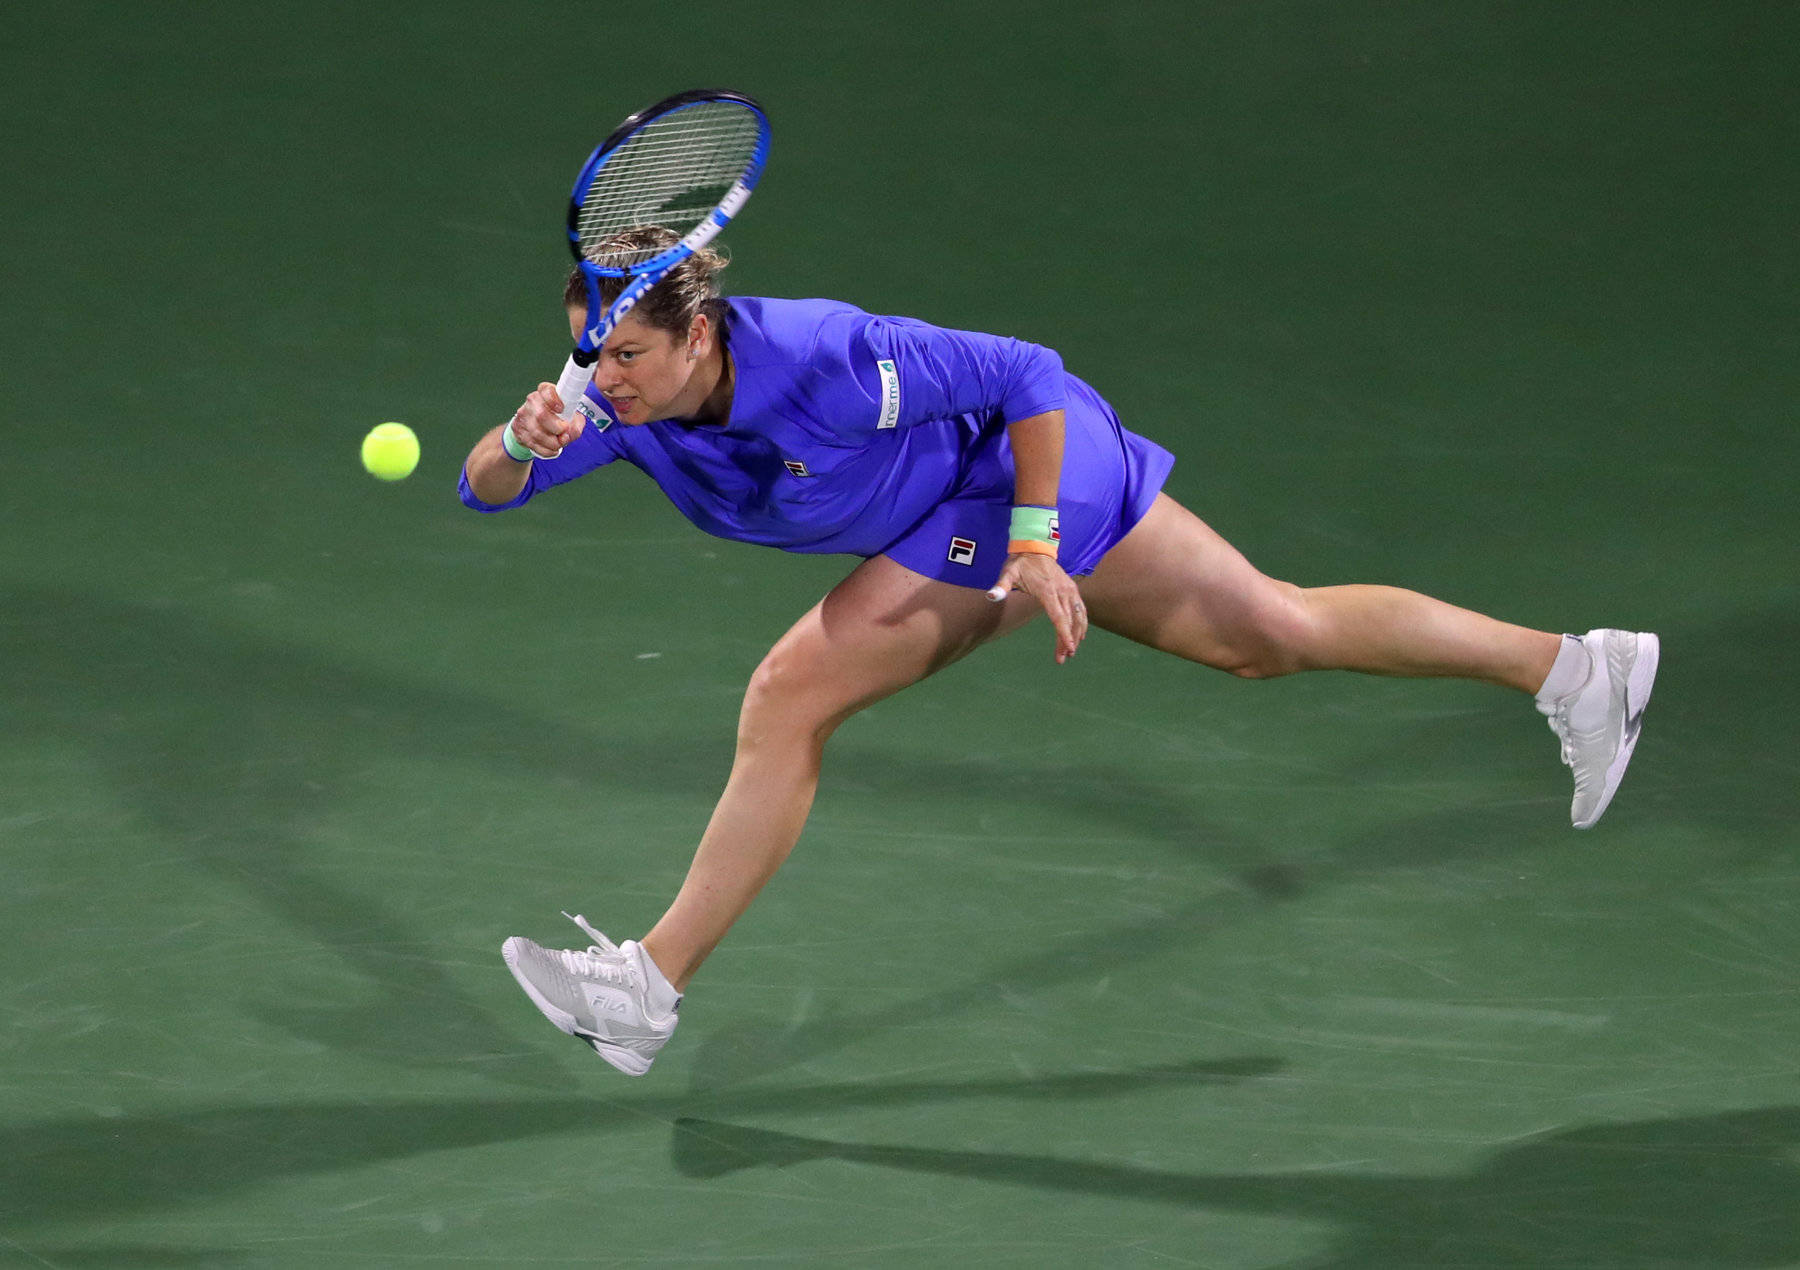 Kimclijsters, Atleta Femenina Del Indian Wells Masters. Fondo de pantalla